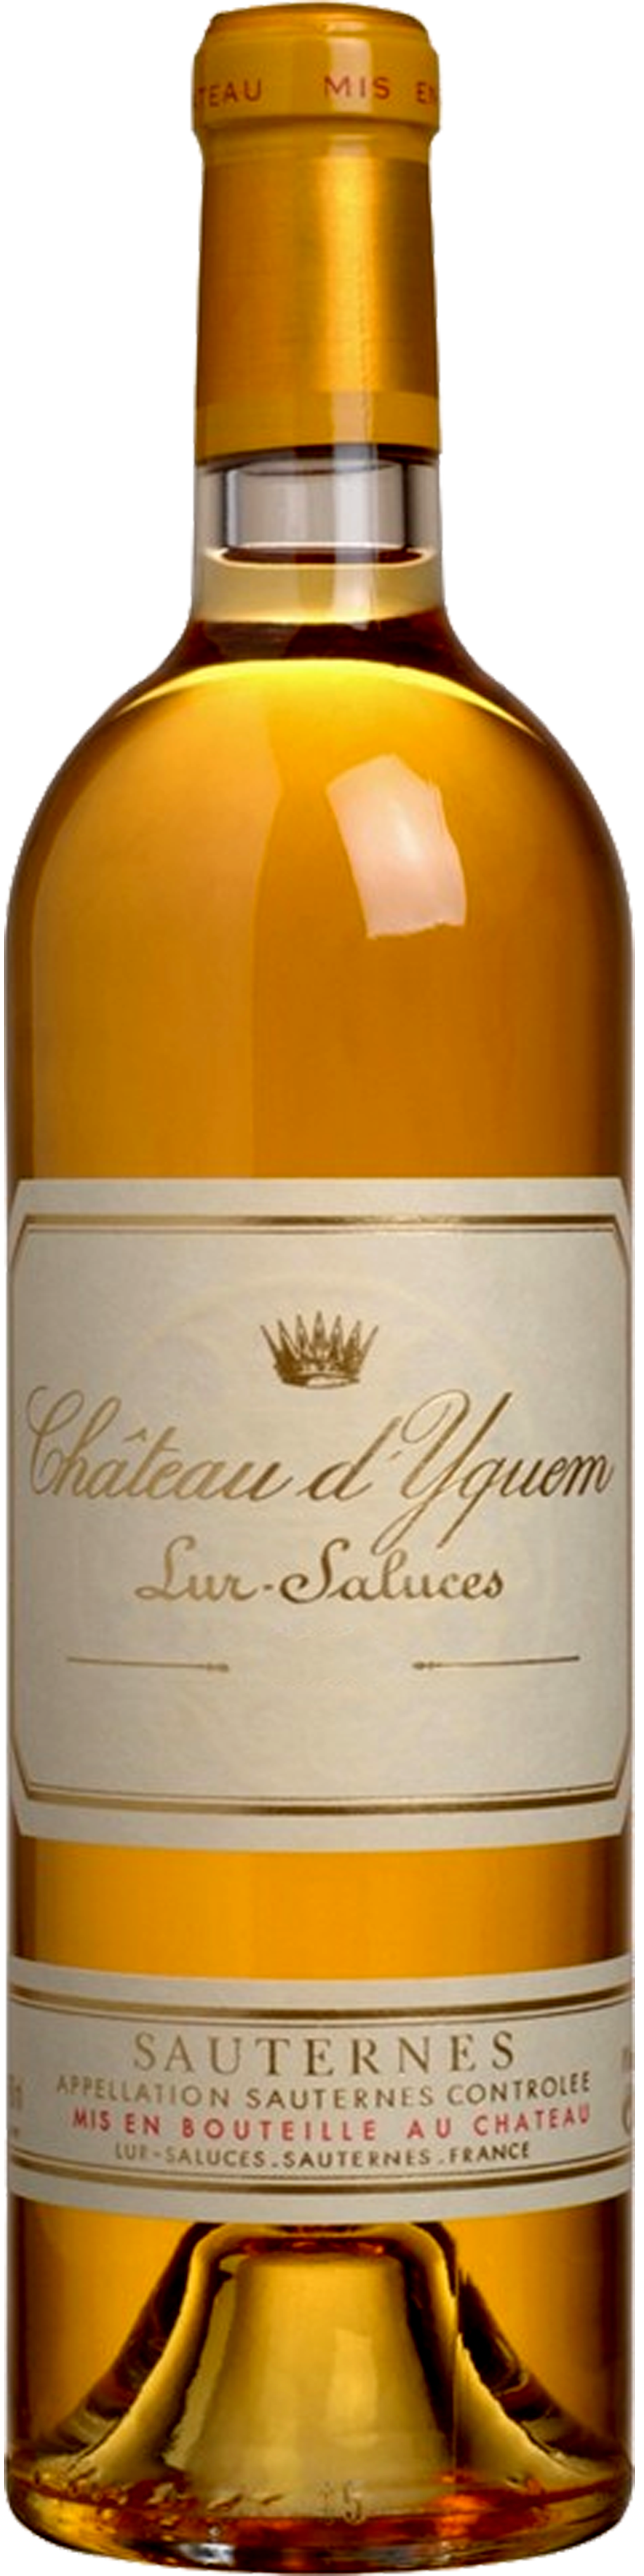 Image of product Château d'Yquem, 1er Cru Supérieur Sauternes